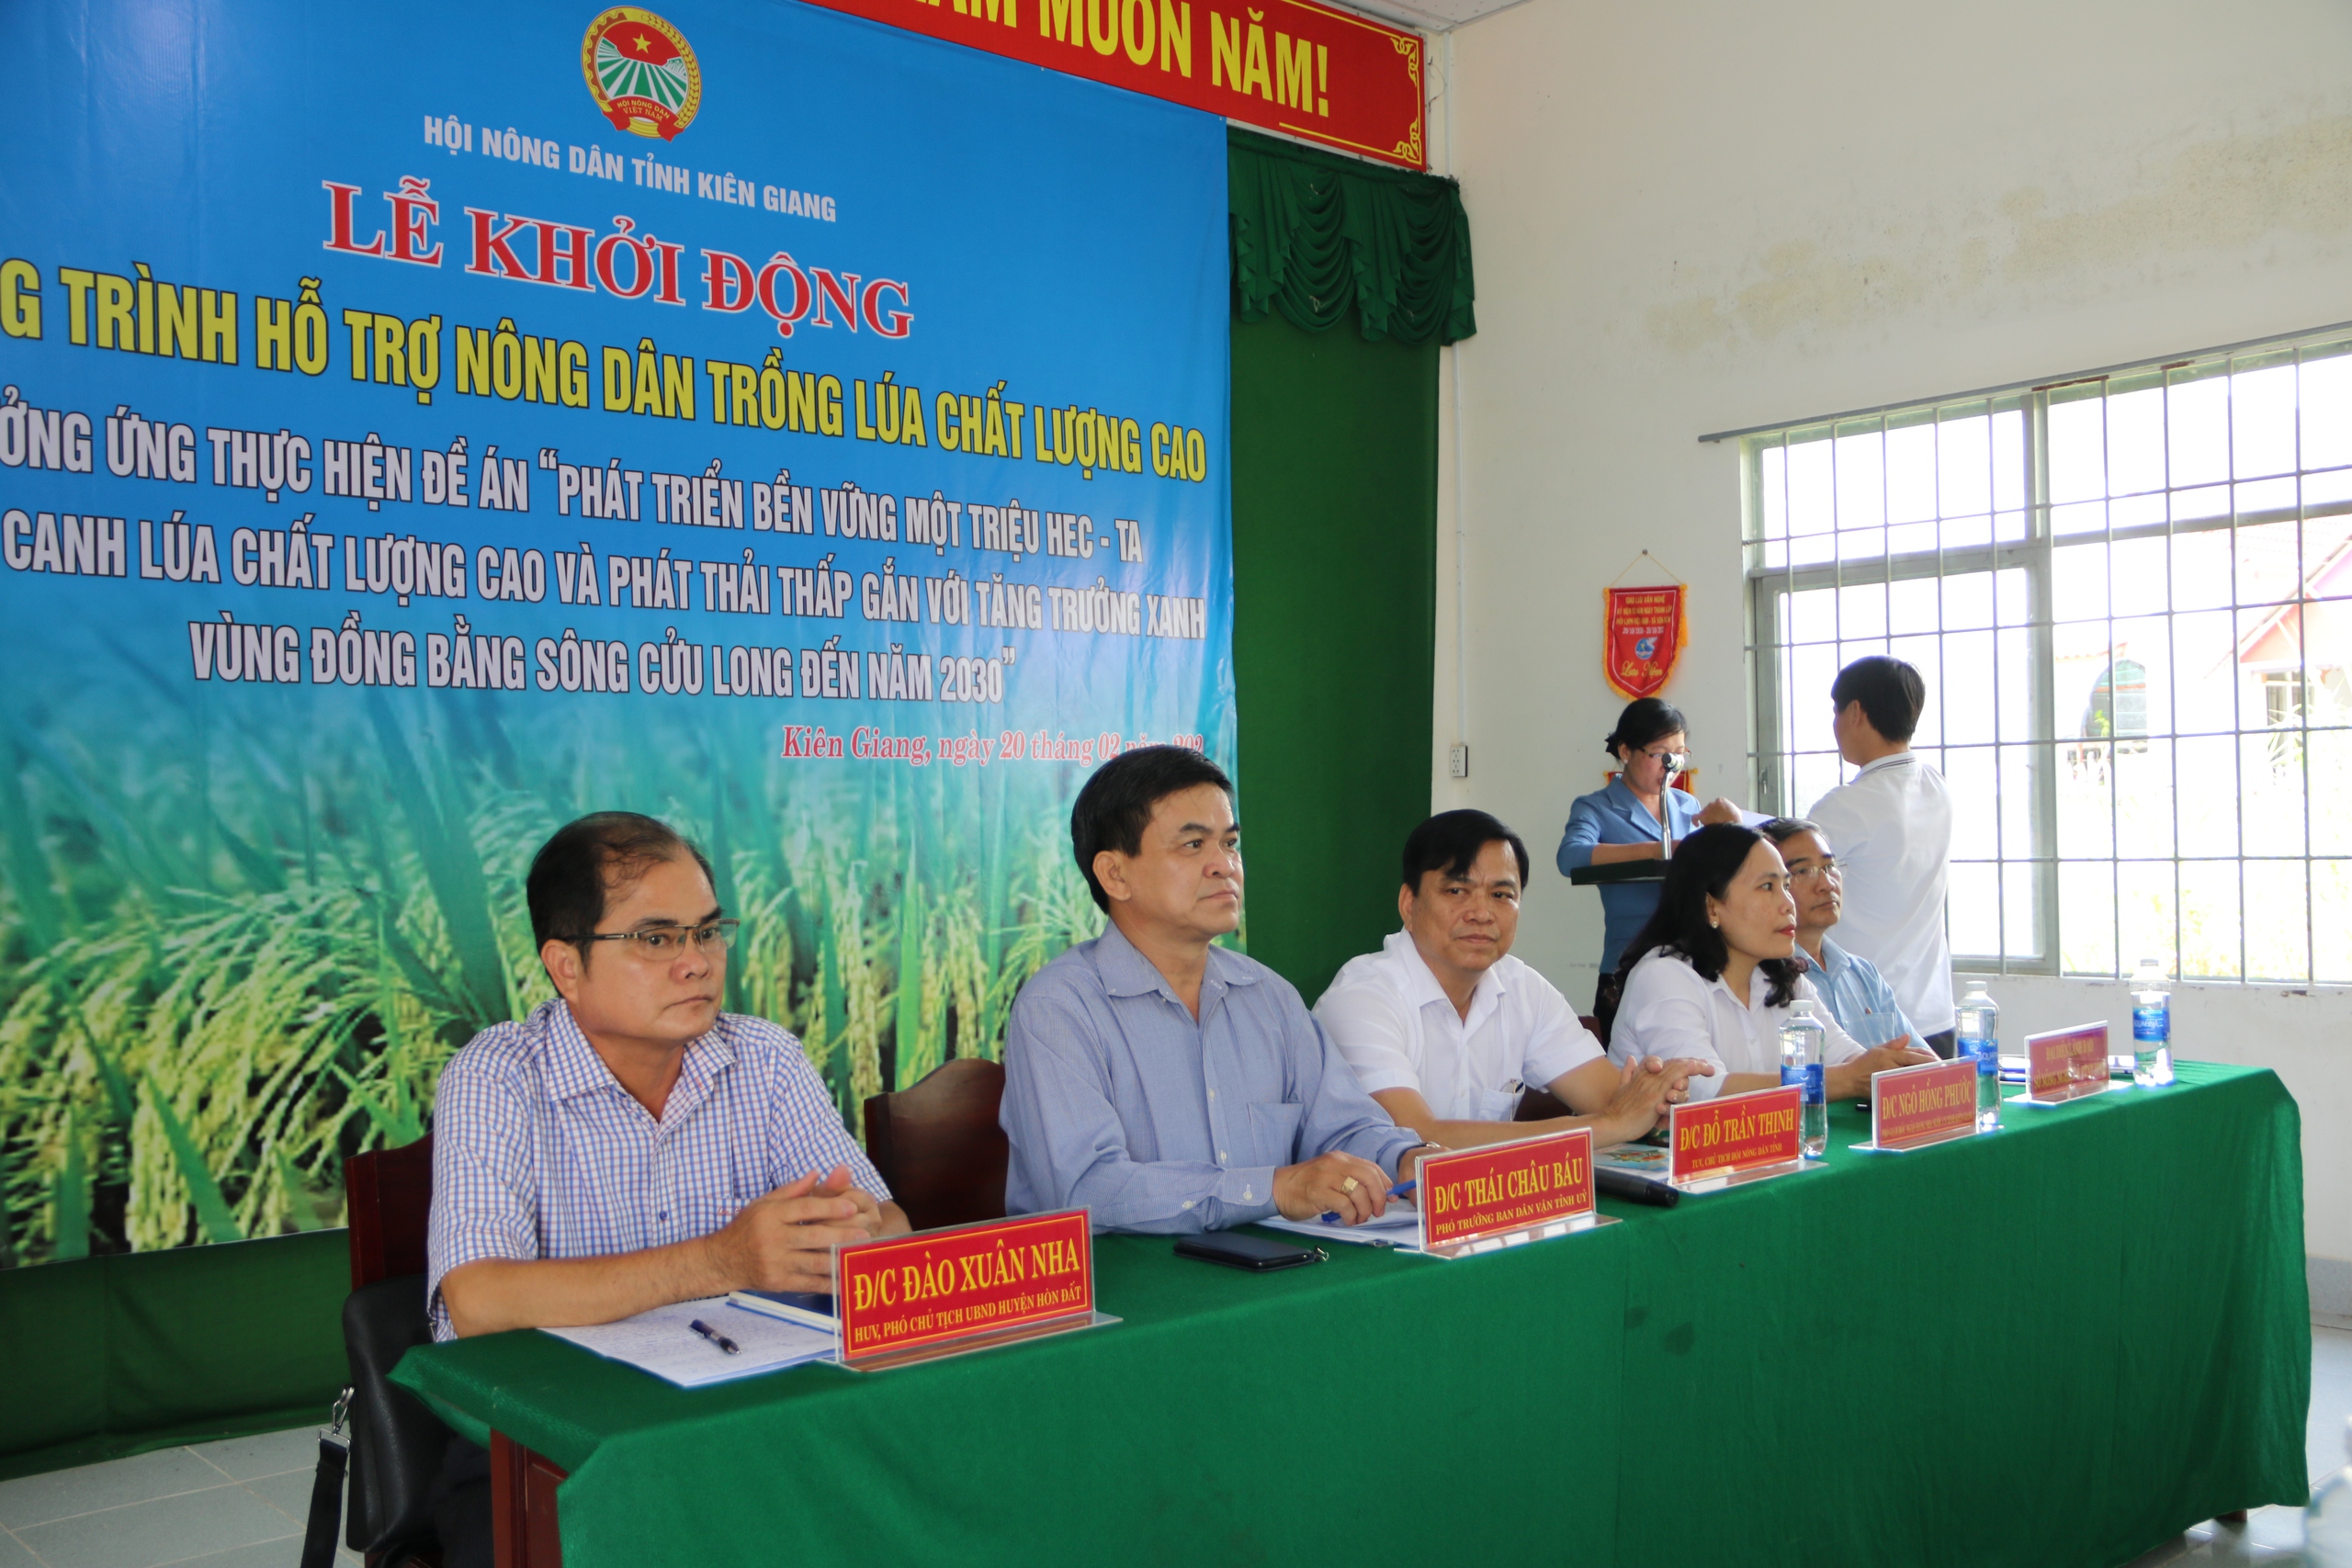 Hội Nông dân Kiên Giang giải ngân 500 triệu đồng cho hội viên tham gia dự án “Trồng lúa chất lượng cao”- Ảnh 1.